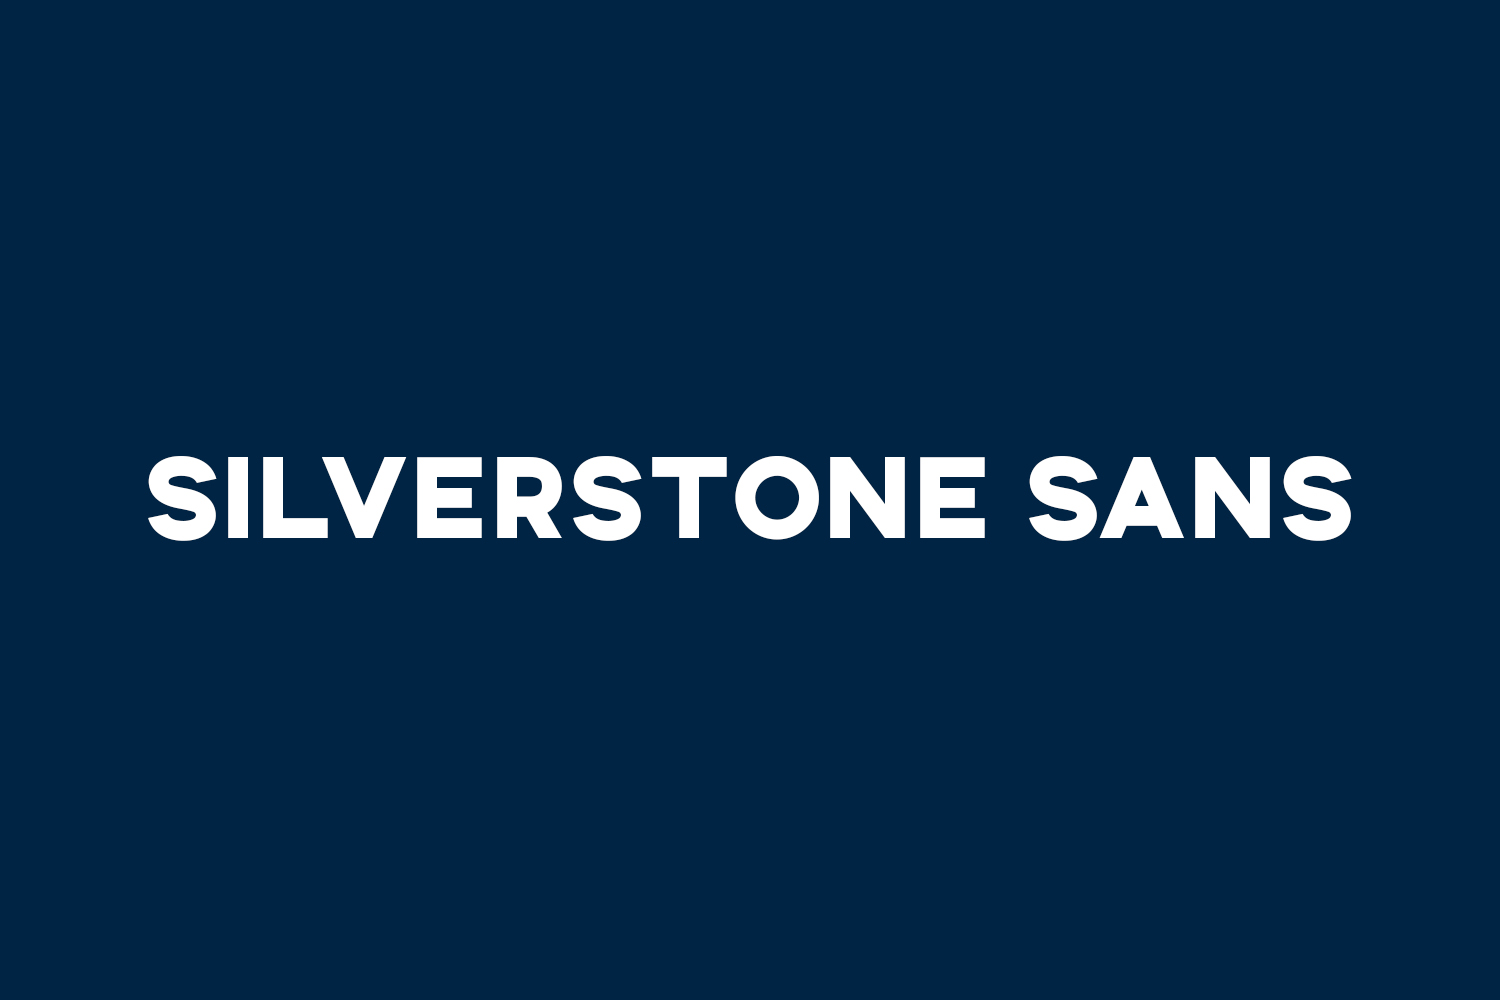 Silverstone Sans Free Font